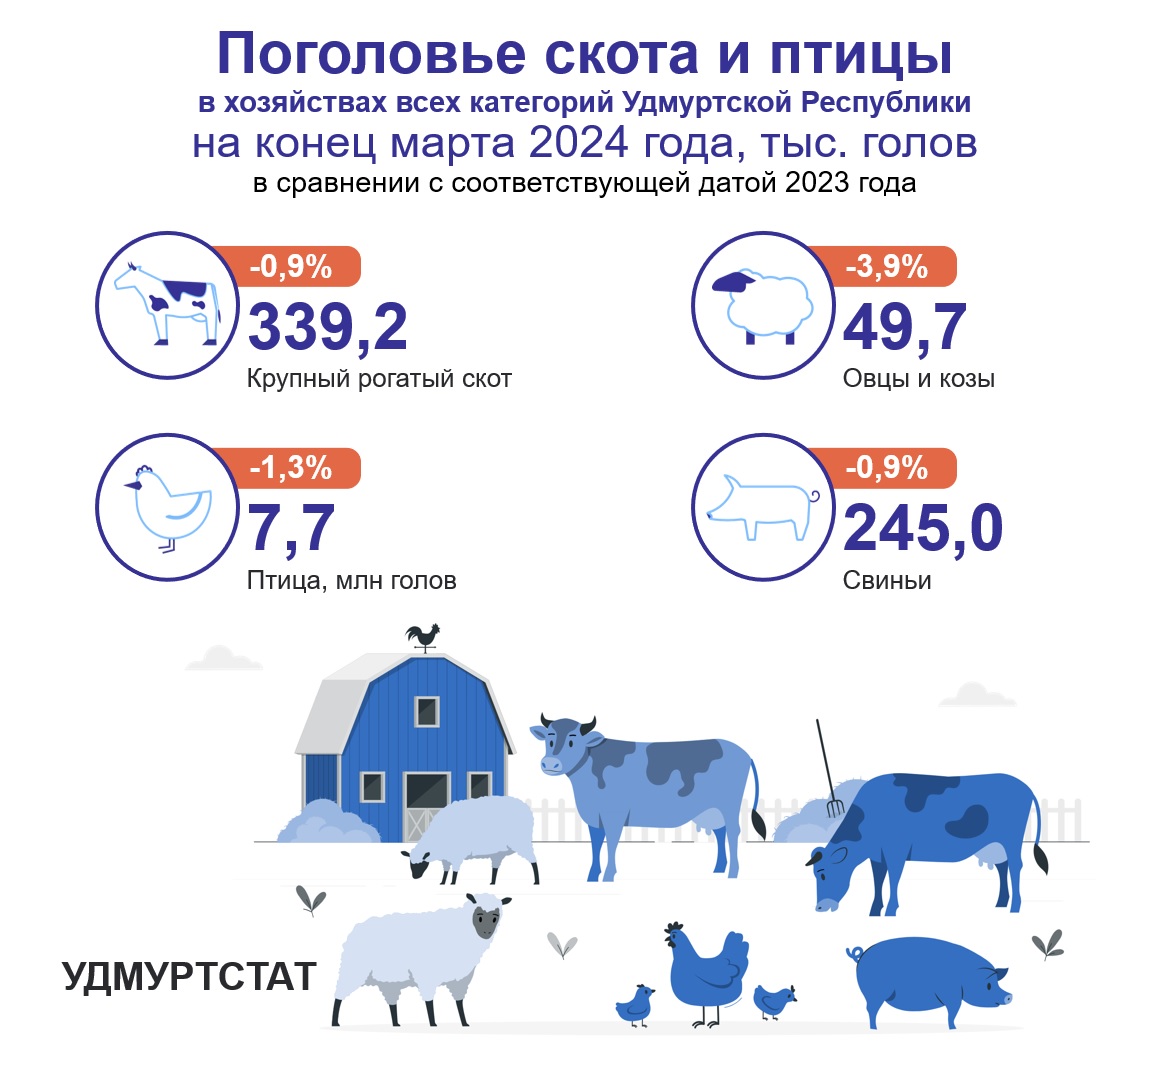 Поголовье скота и птицы на конец марта 2024 года.